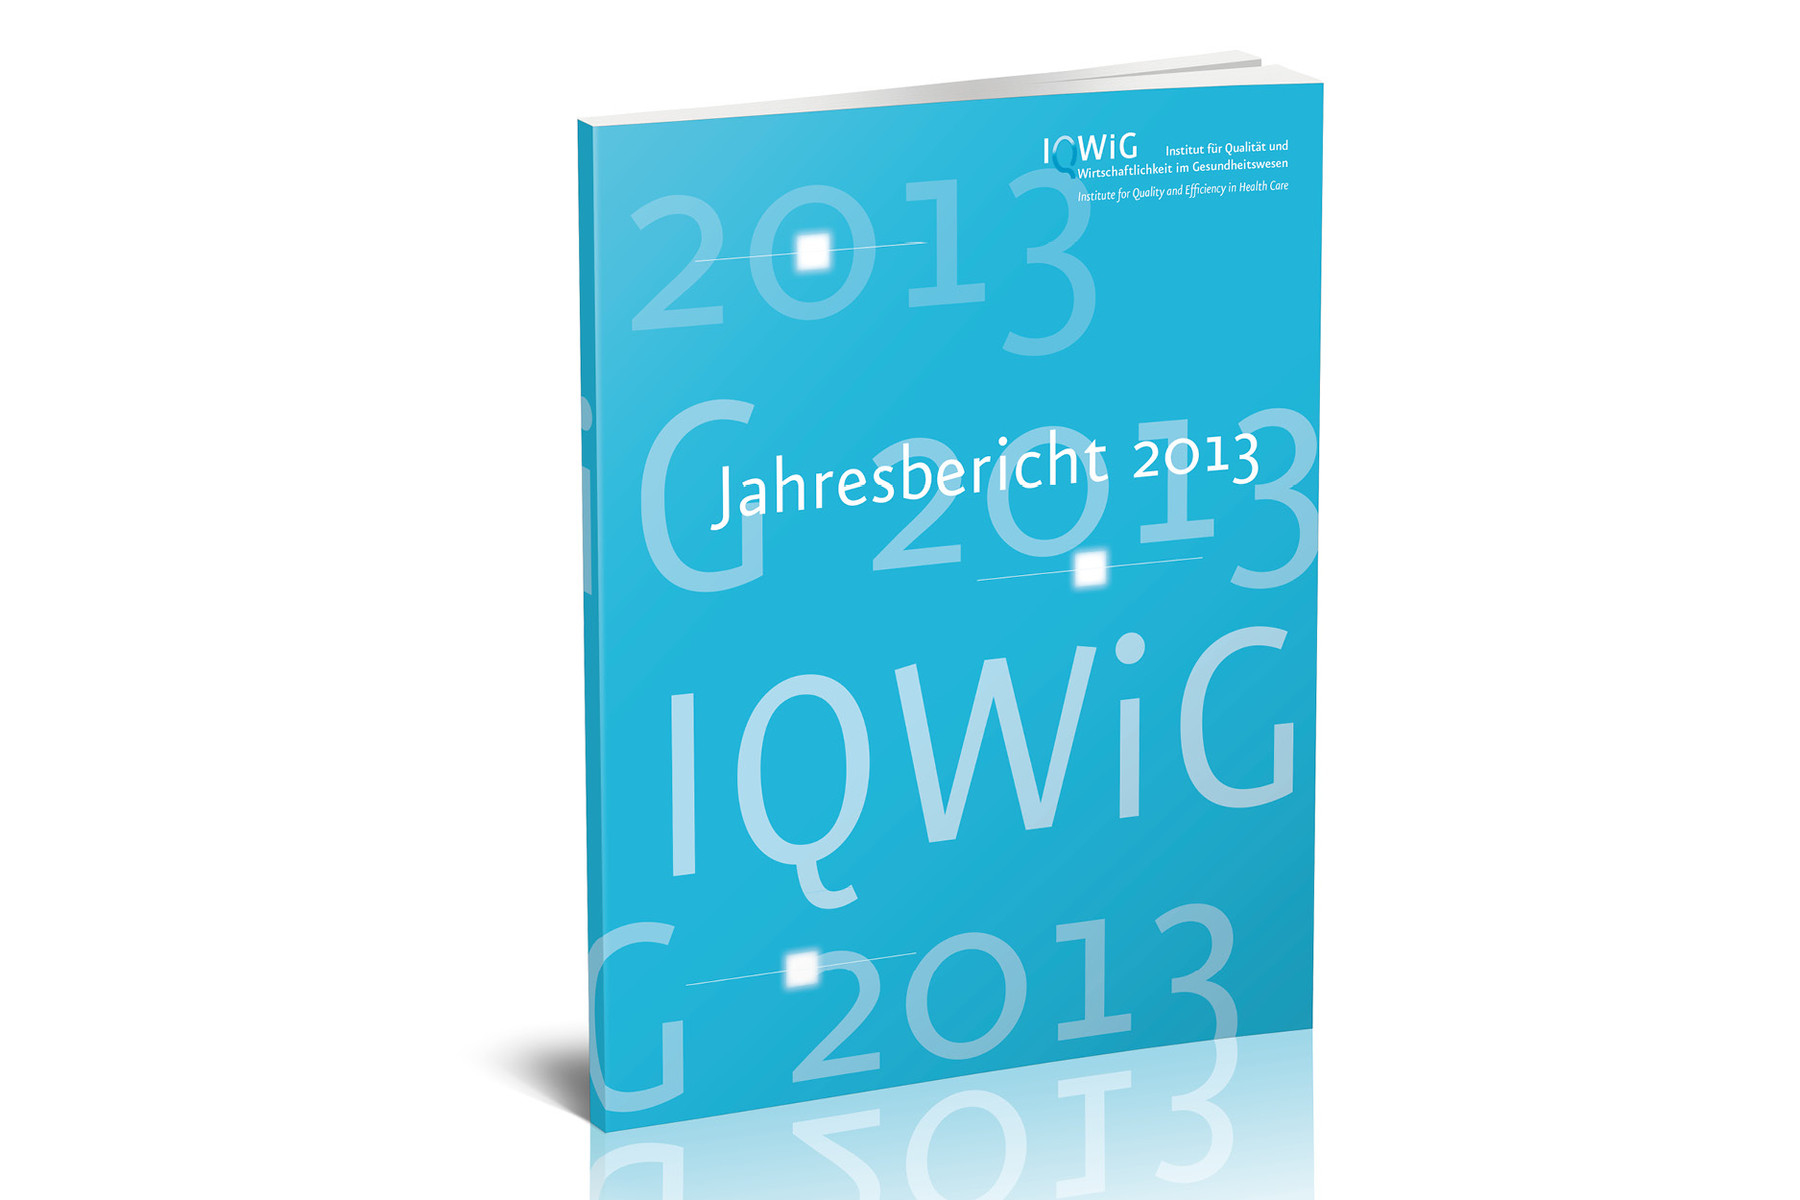 IQWIG — Institut für Qualität und Wirtschaftlichkeit im Gesundheitswesen